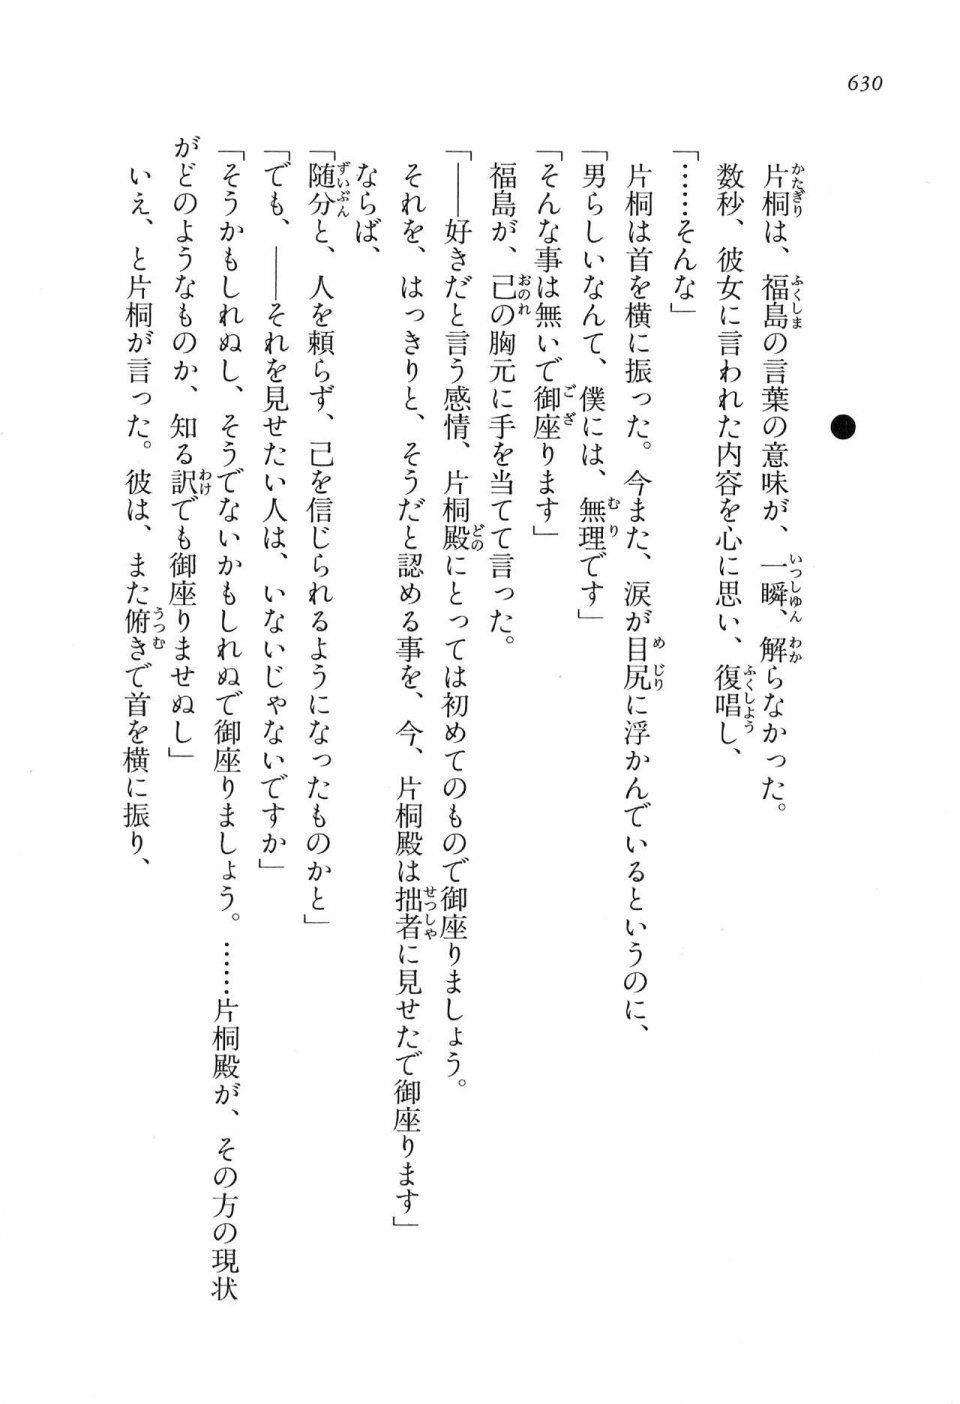 Kyoukai Senjou no Horizon LN Vol 16(7A) - Photo #630